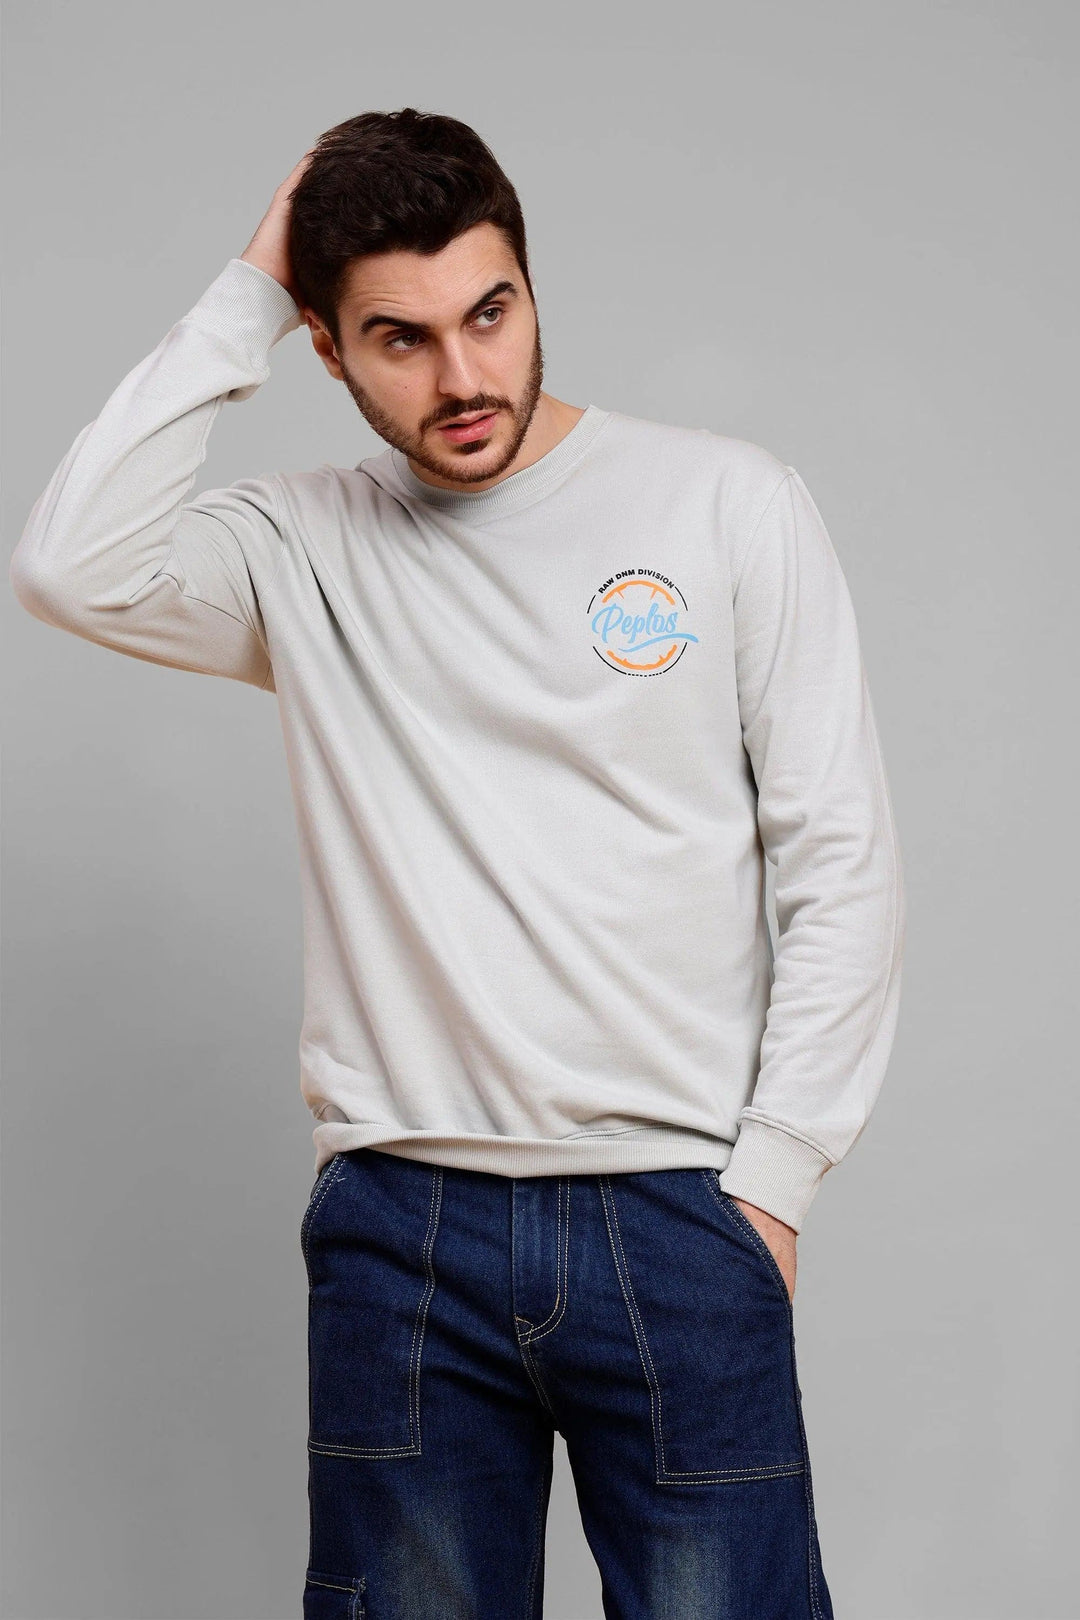 Regular Fit Pista Grey Premium Sweatshirt For Men - Peplos Jeans 